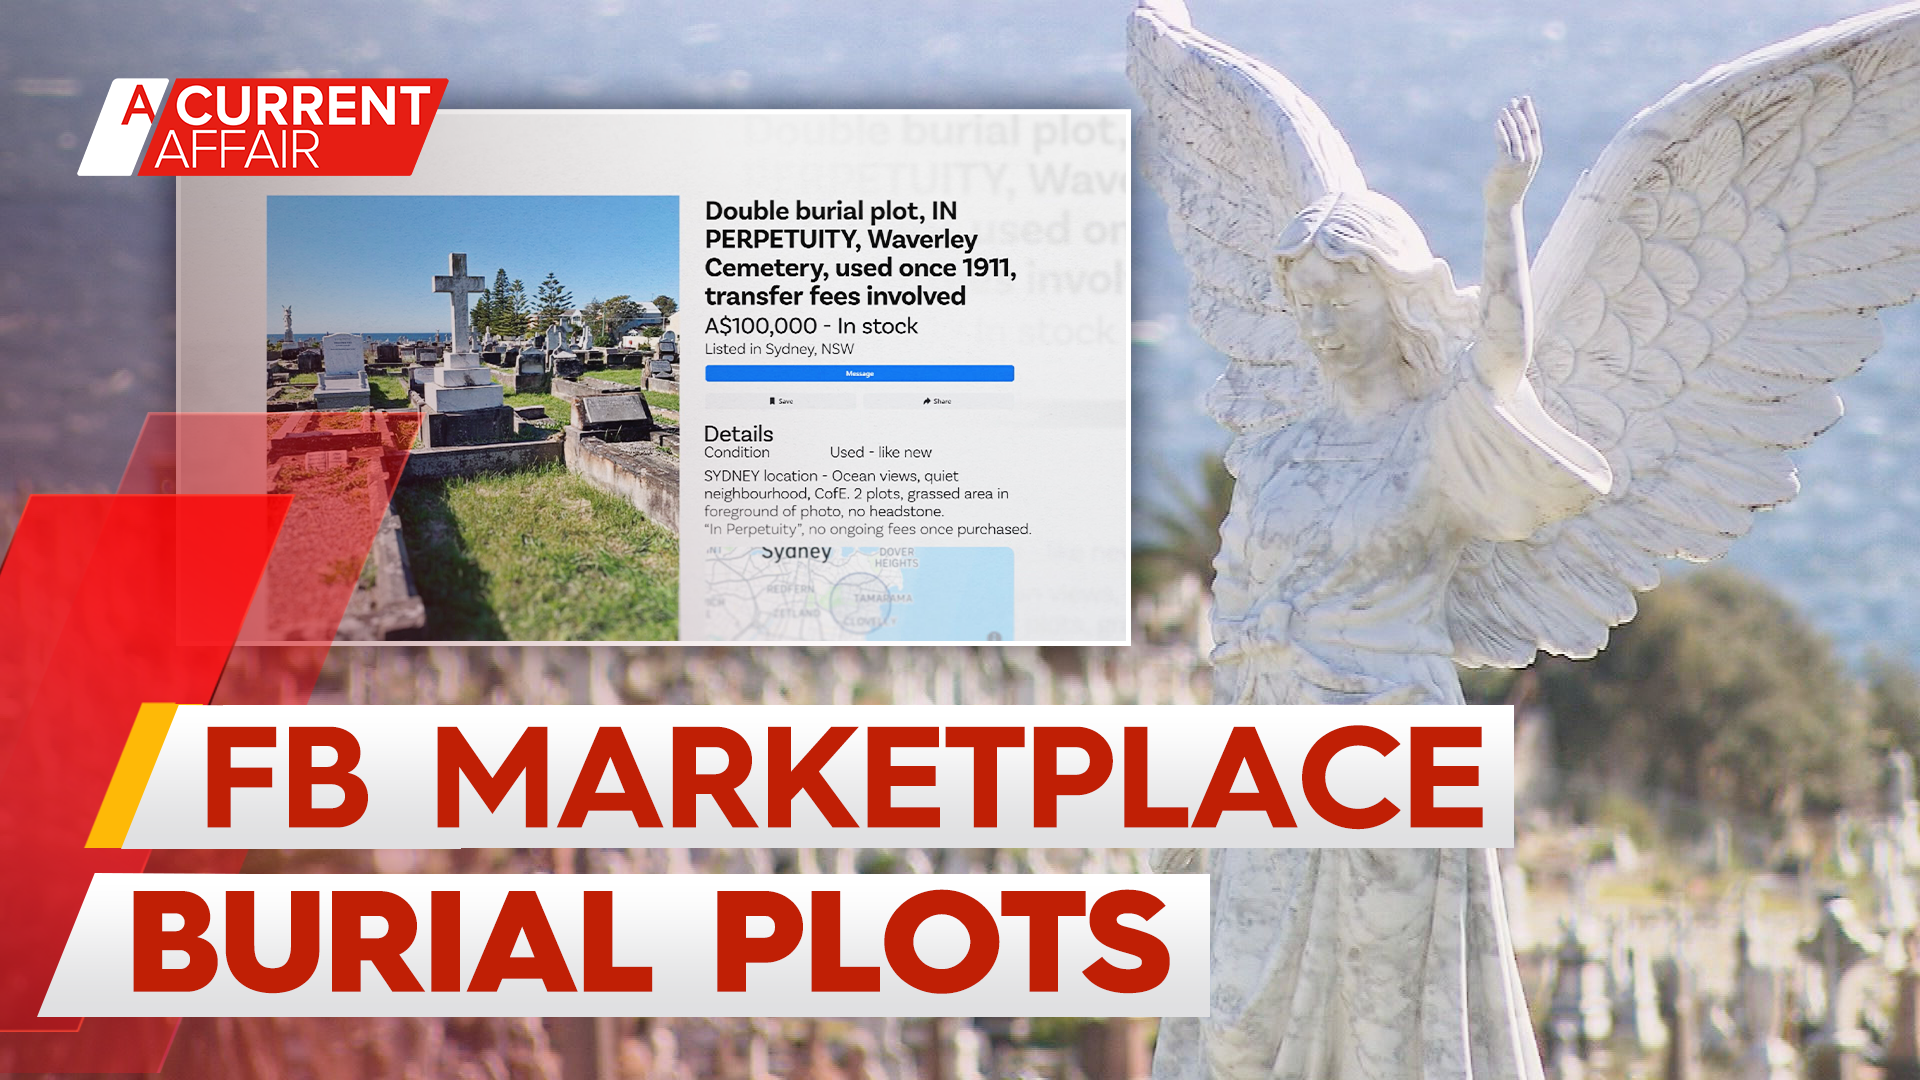 Sydney grave listed for sale on Facebook Marketplace for $100k